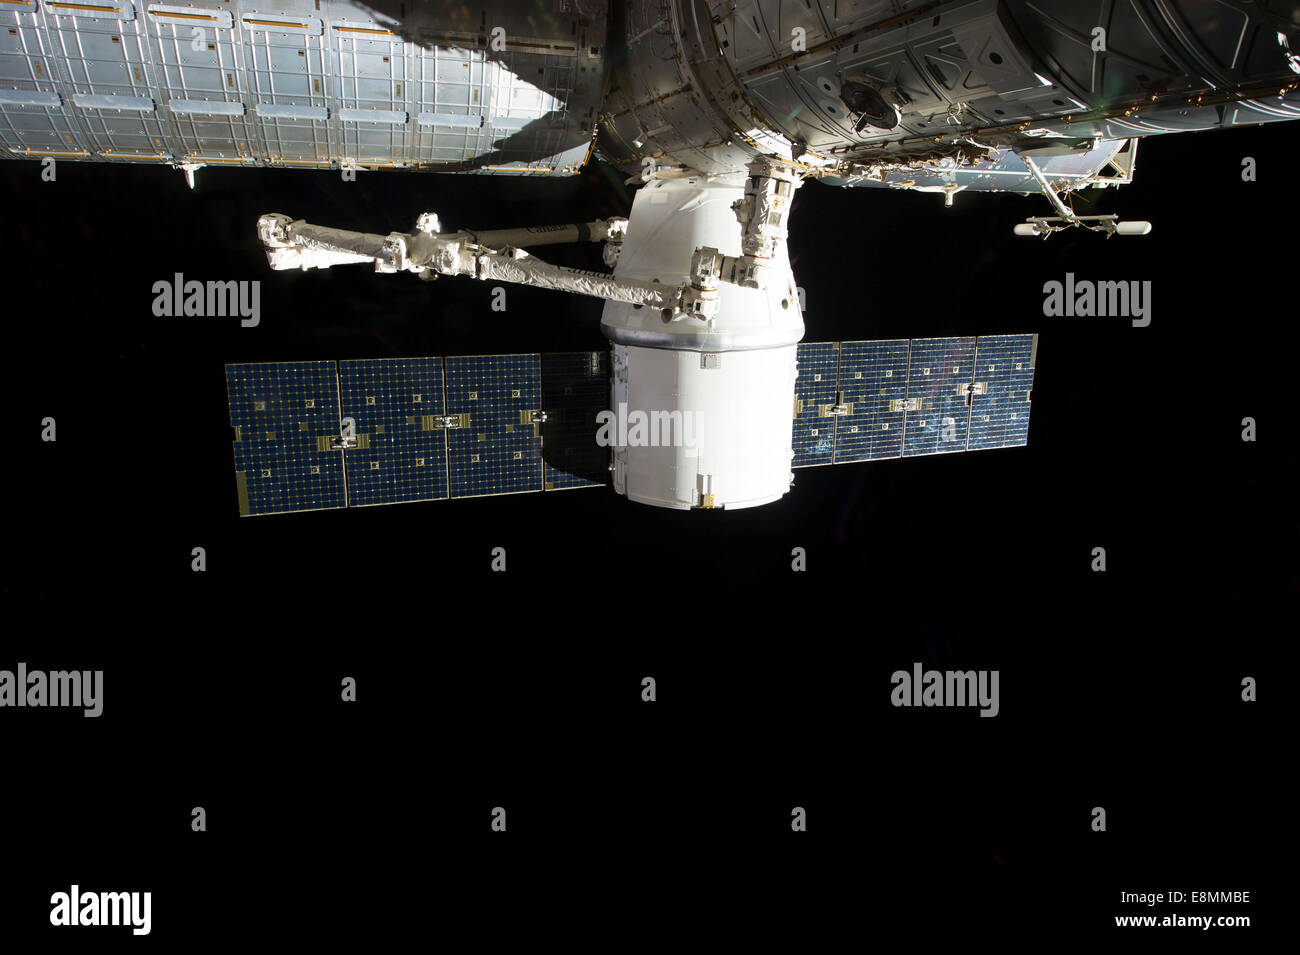 3 mars 2013 - L'amarrage de SpaceX Dragon à la Station spatiale internationale. Banque D'Images